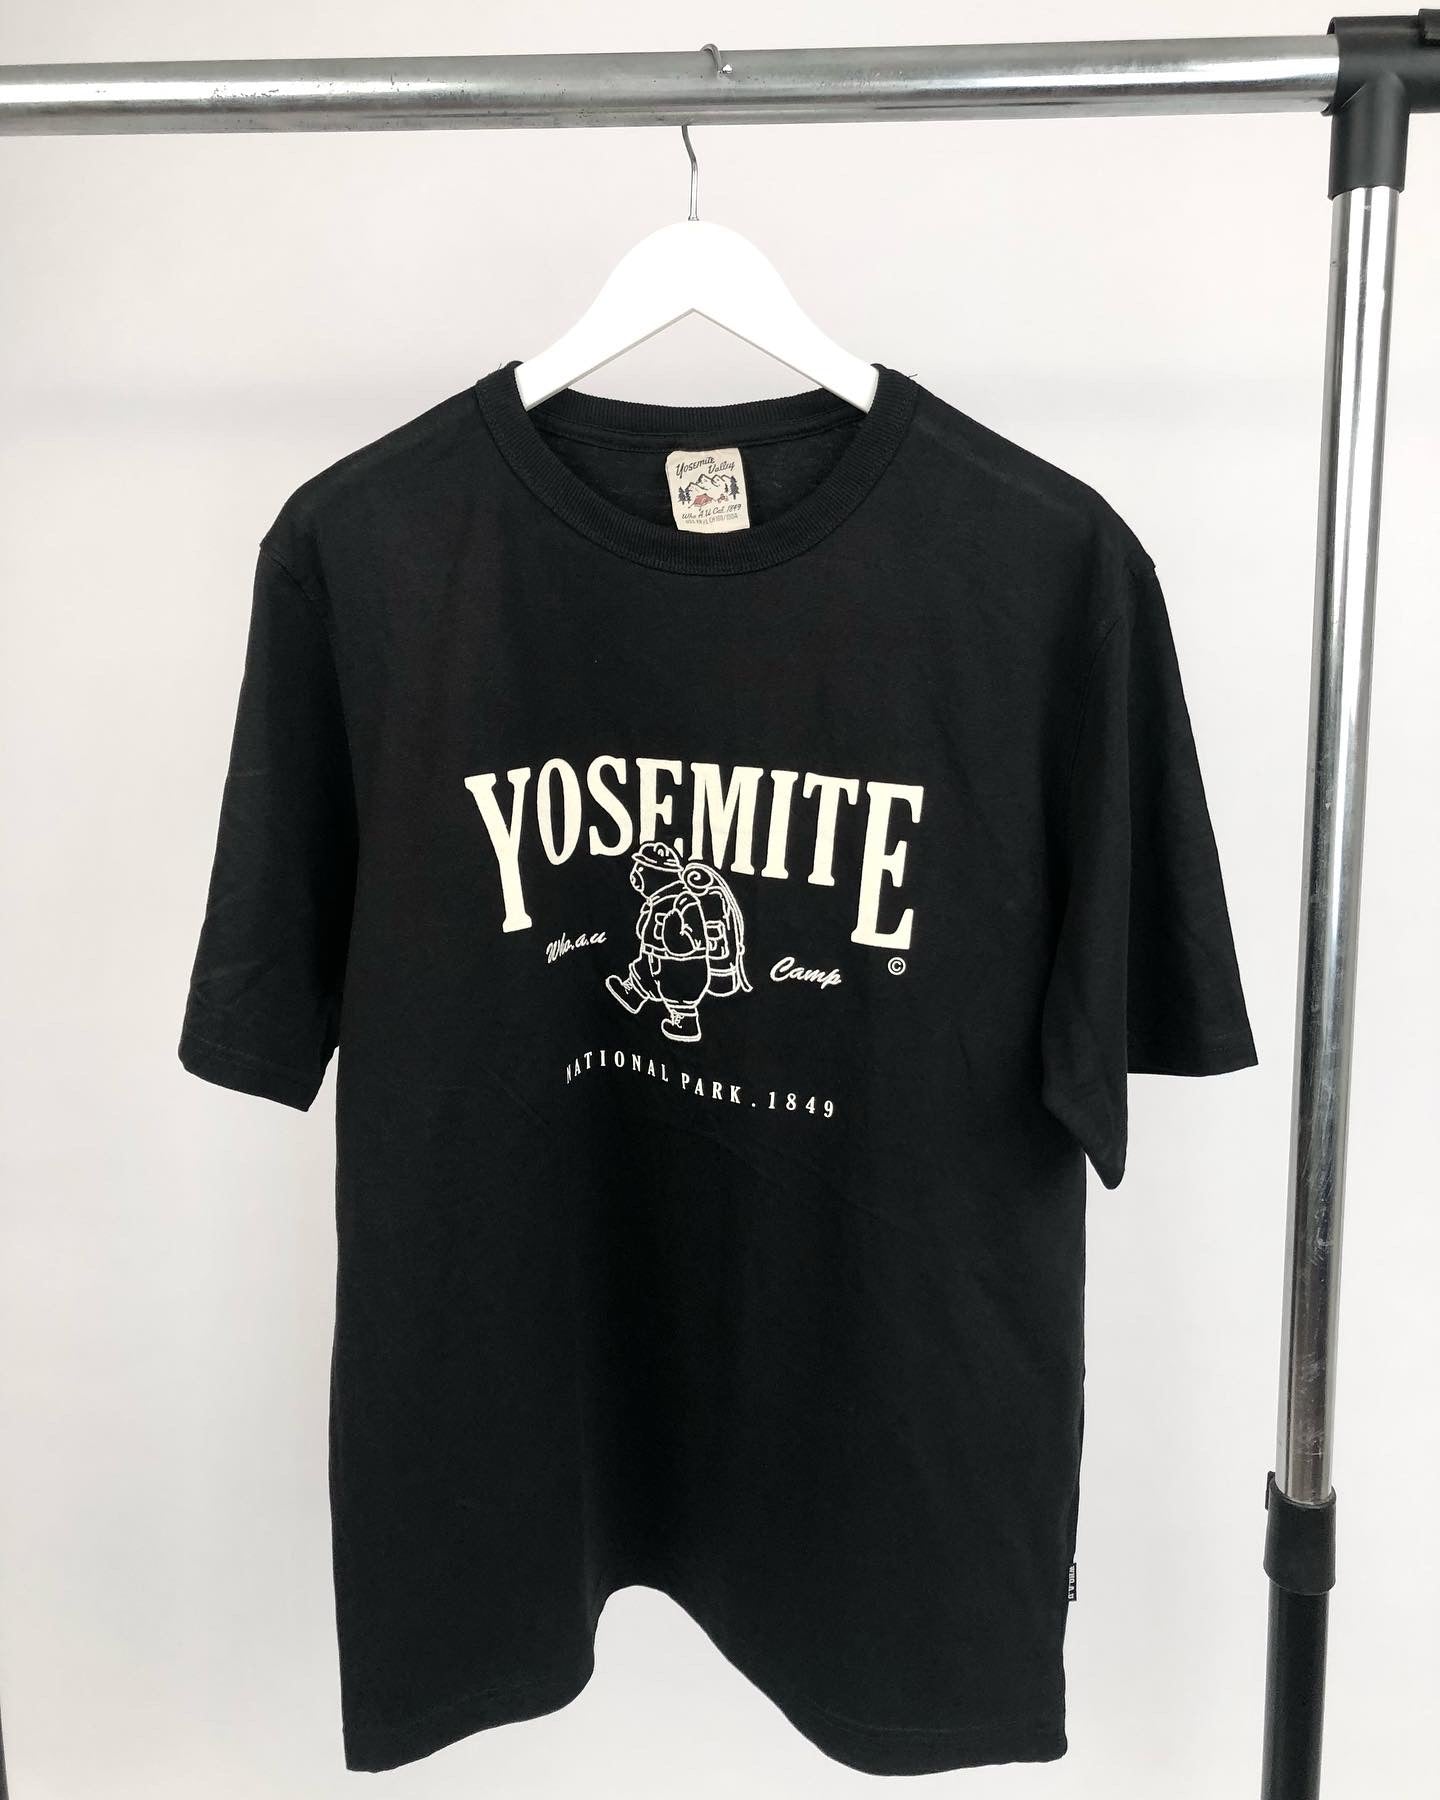 Yosemite print T-shirt in black